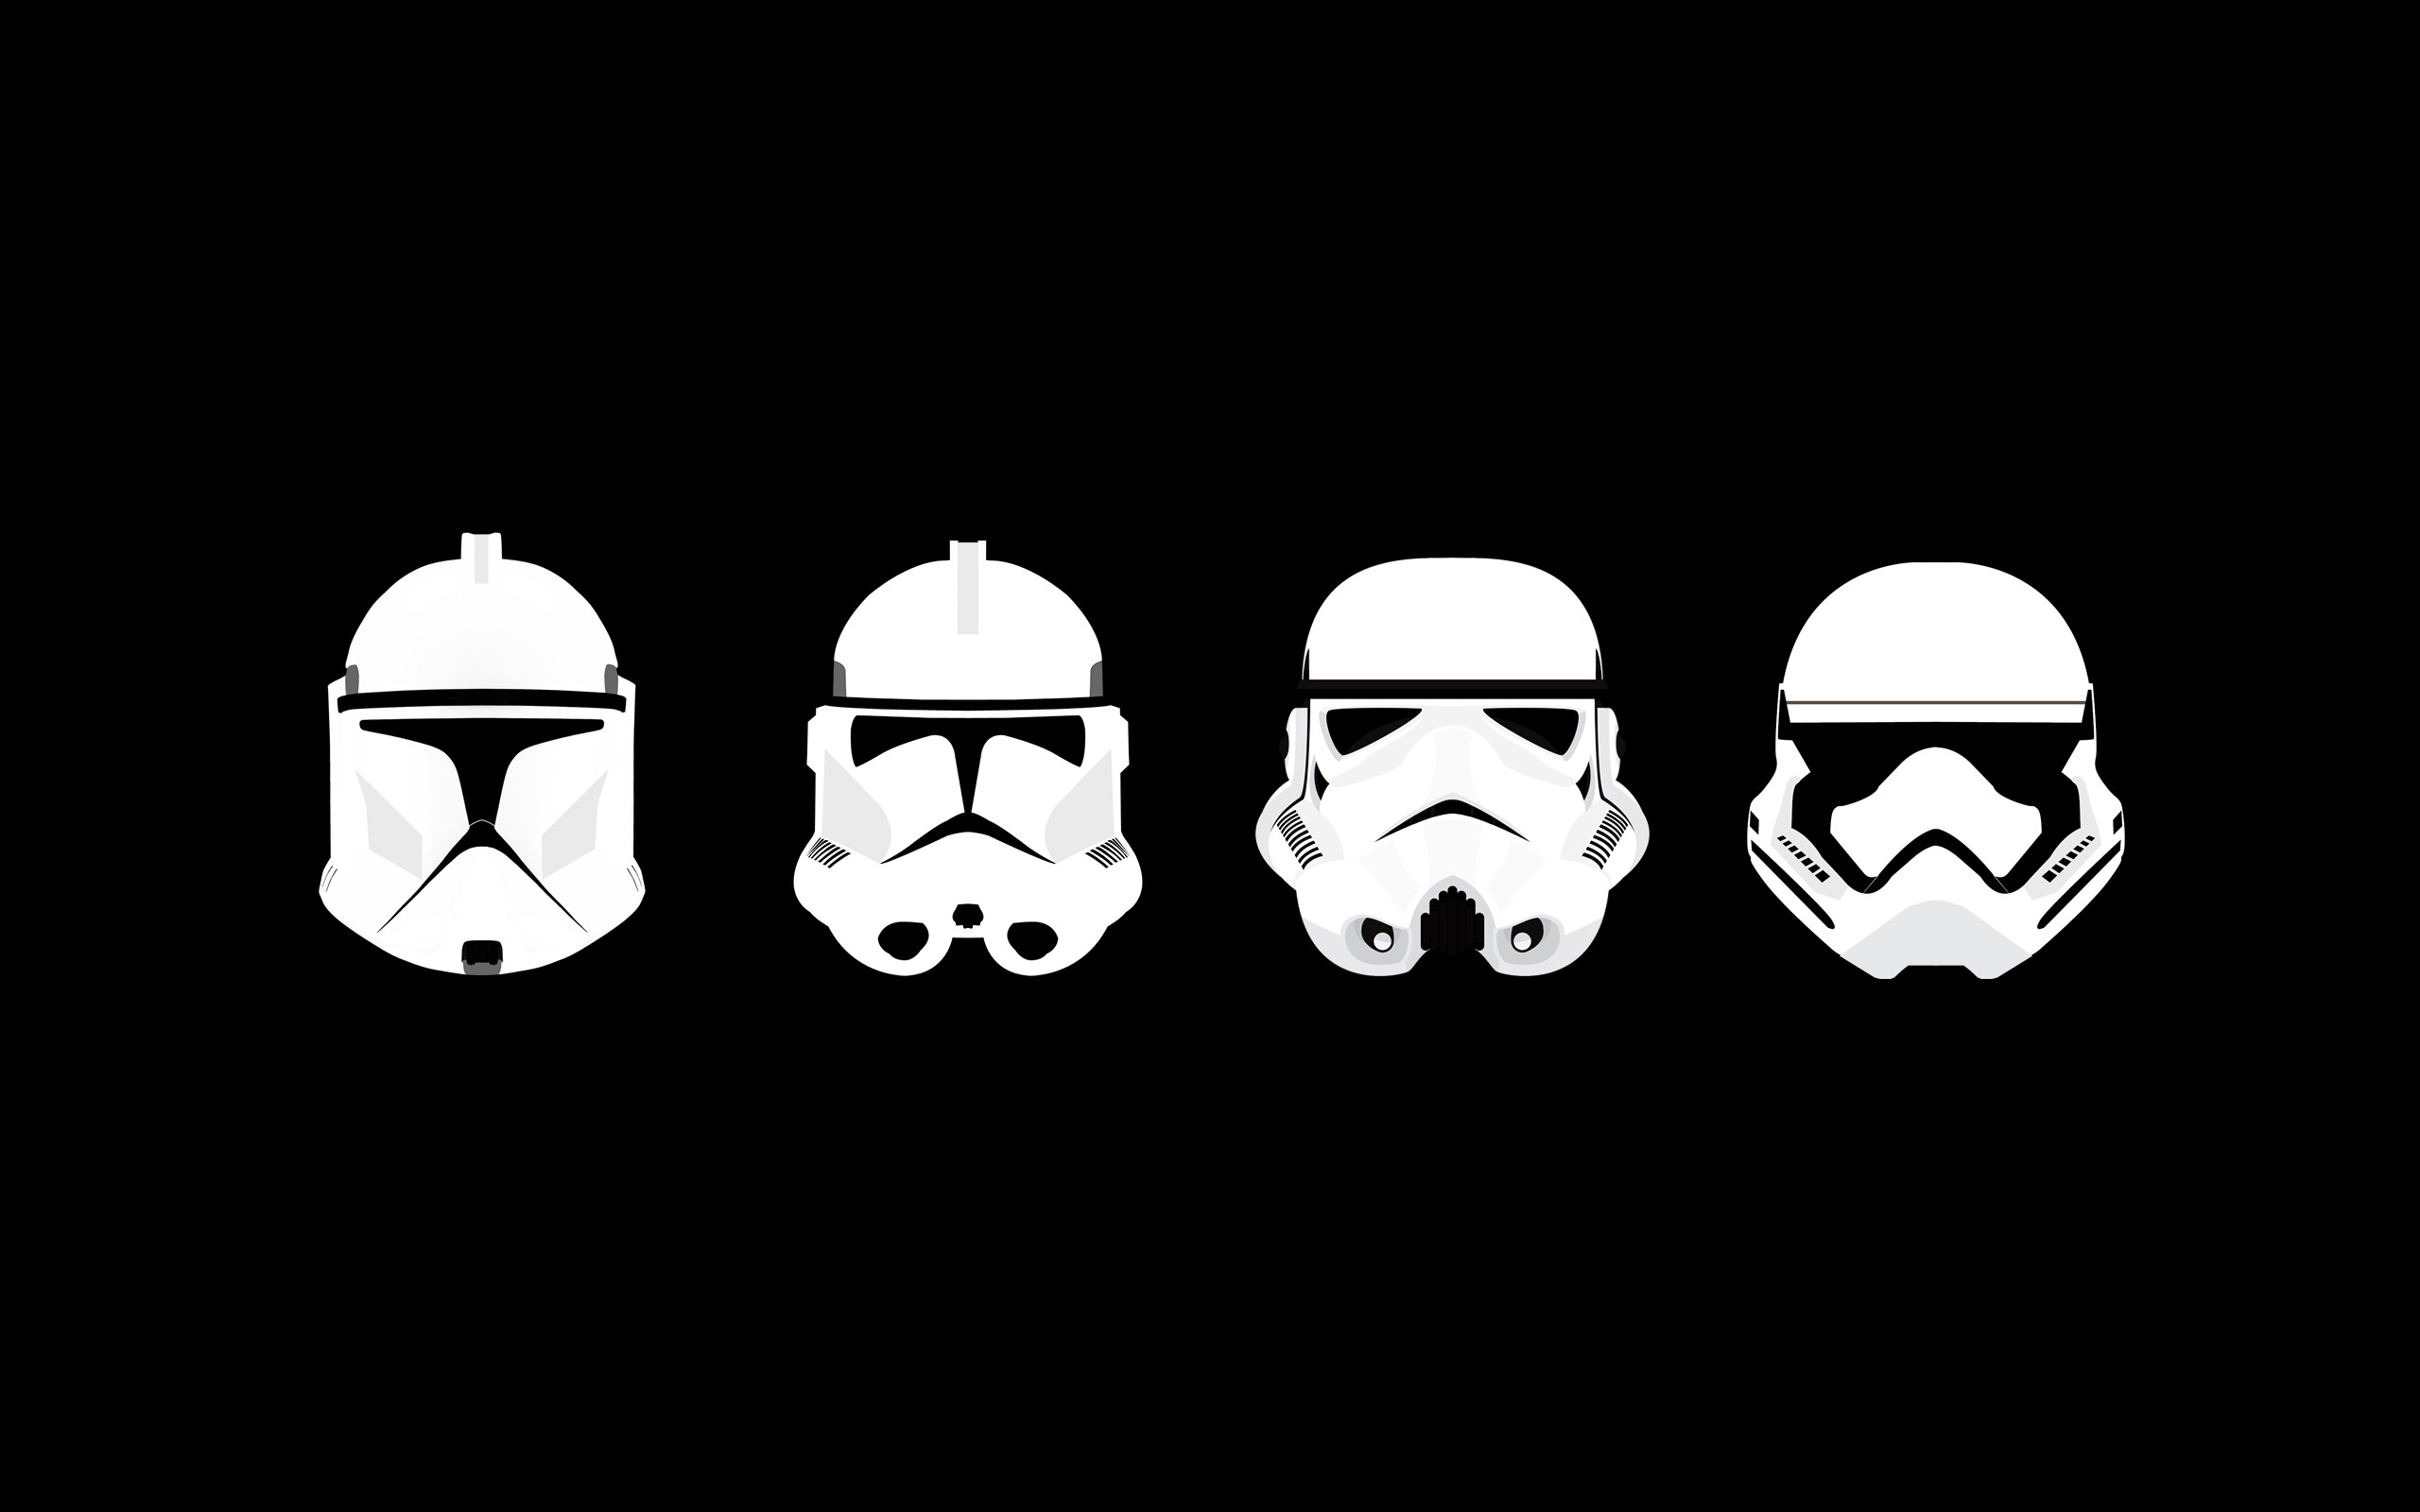 stormtrooper wallpaper hd,helm,kopfbedeckung,schwarz und weiß,erfundener charakter,illustration